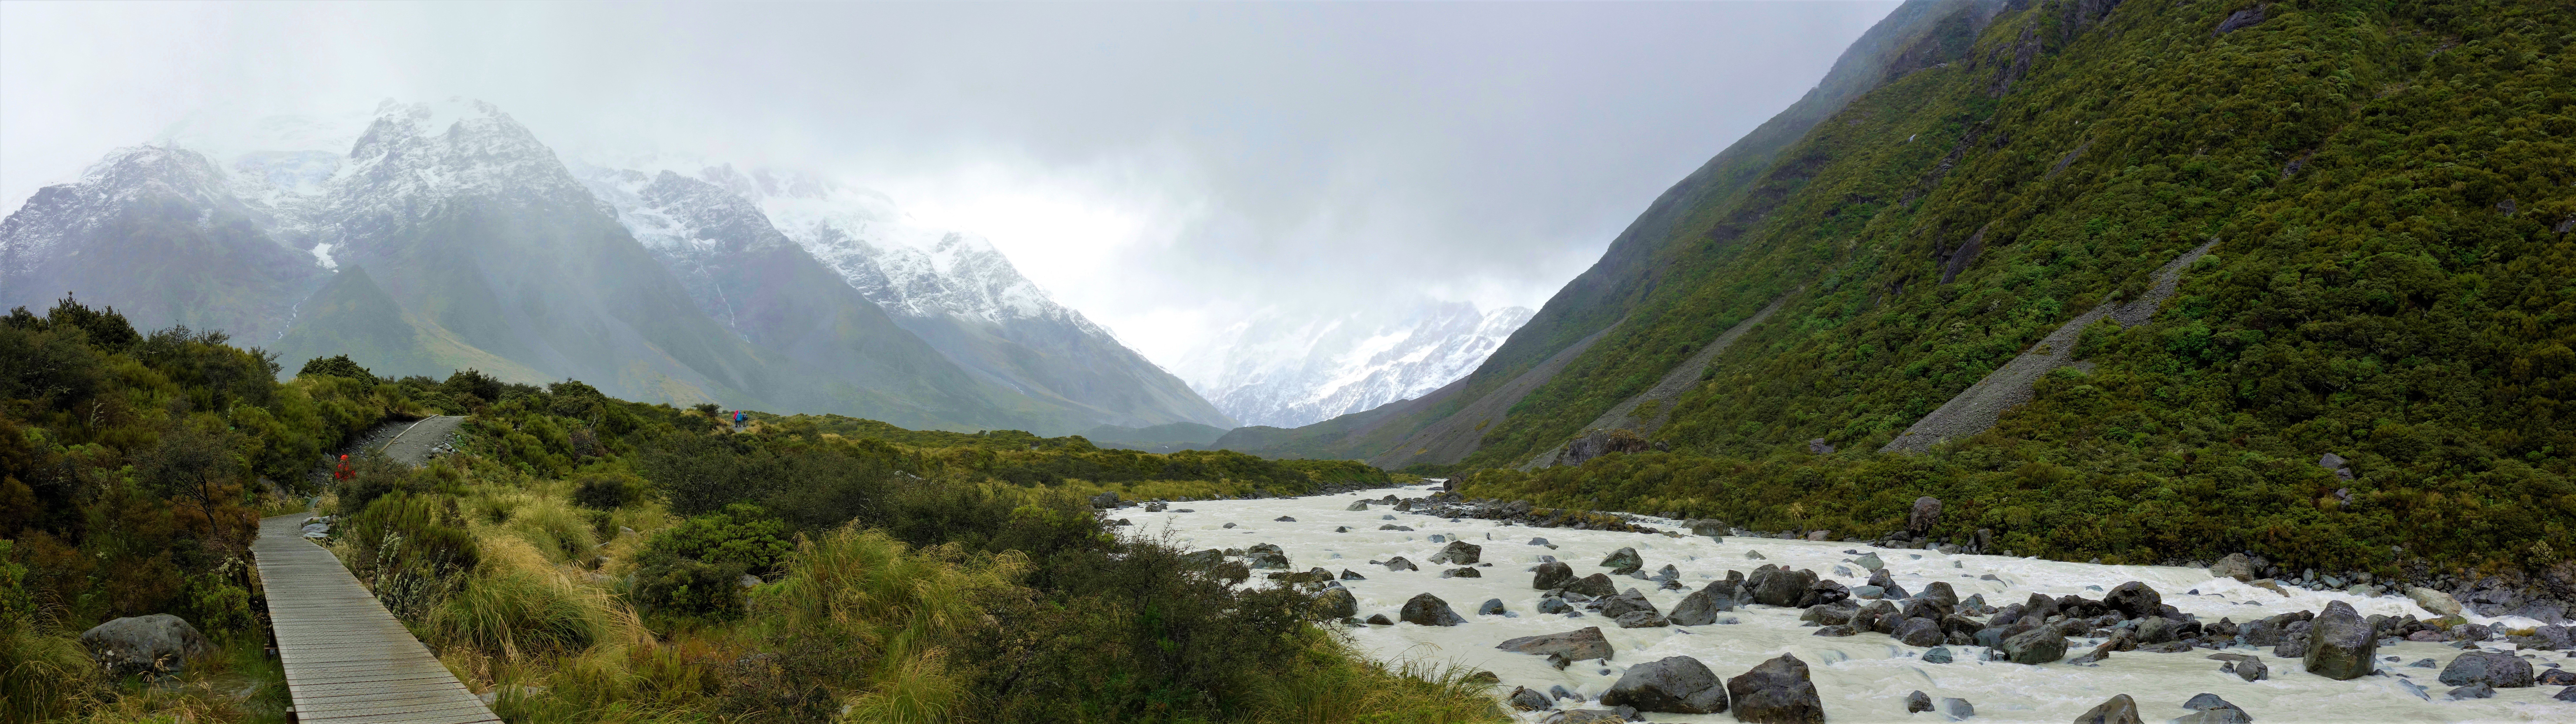 Sidelined_Landscape, Mt Cook, New Zealand скачать